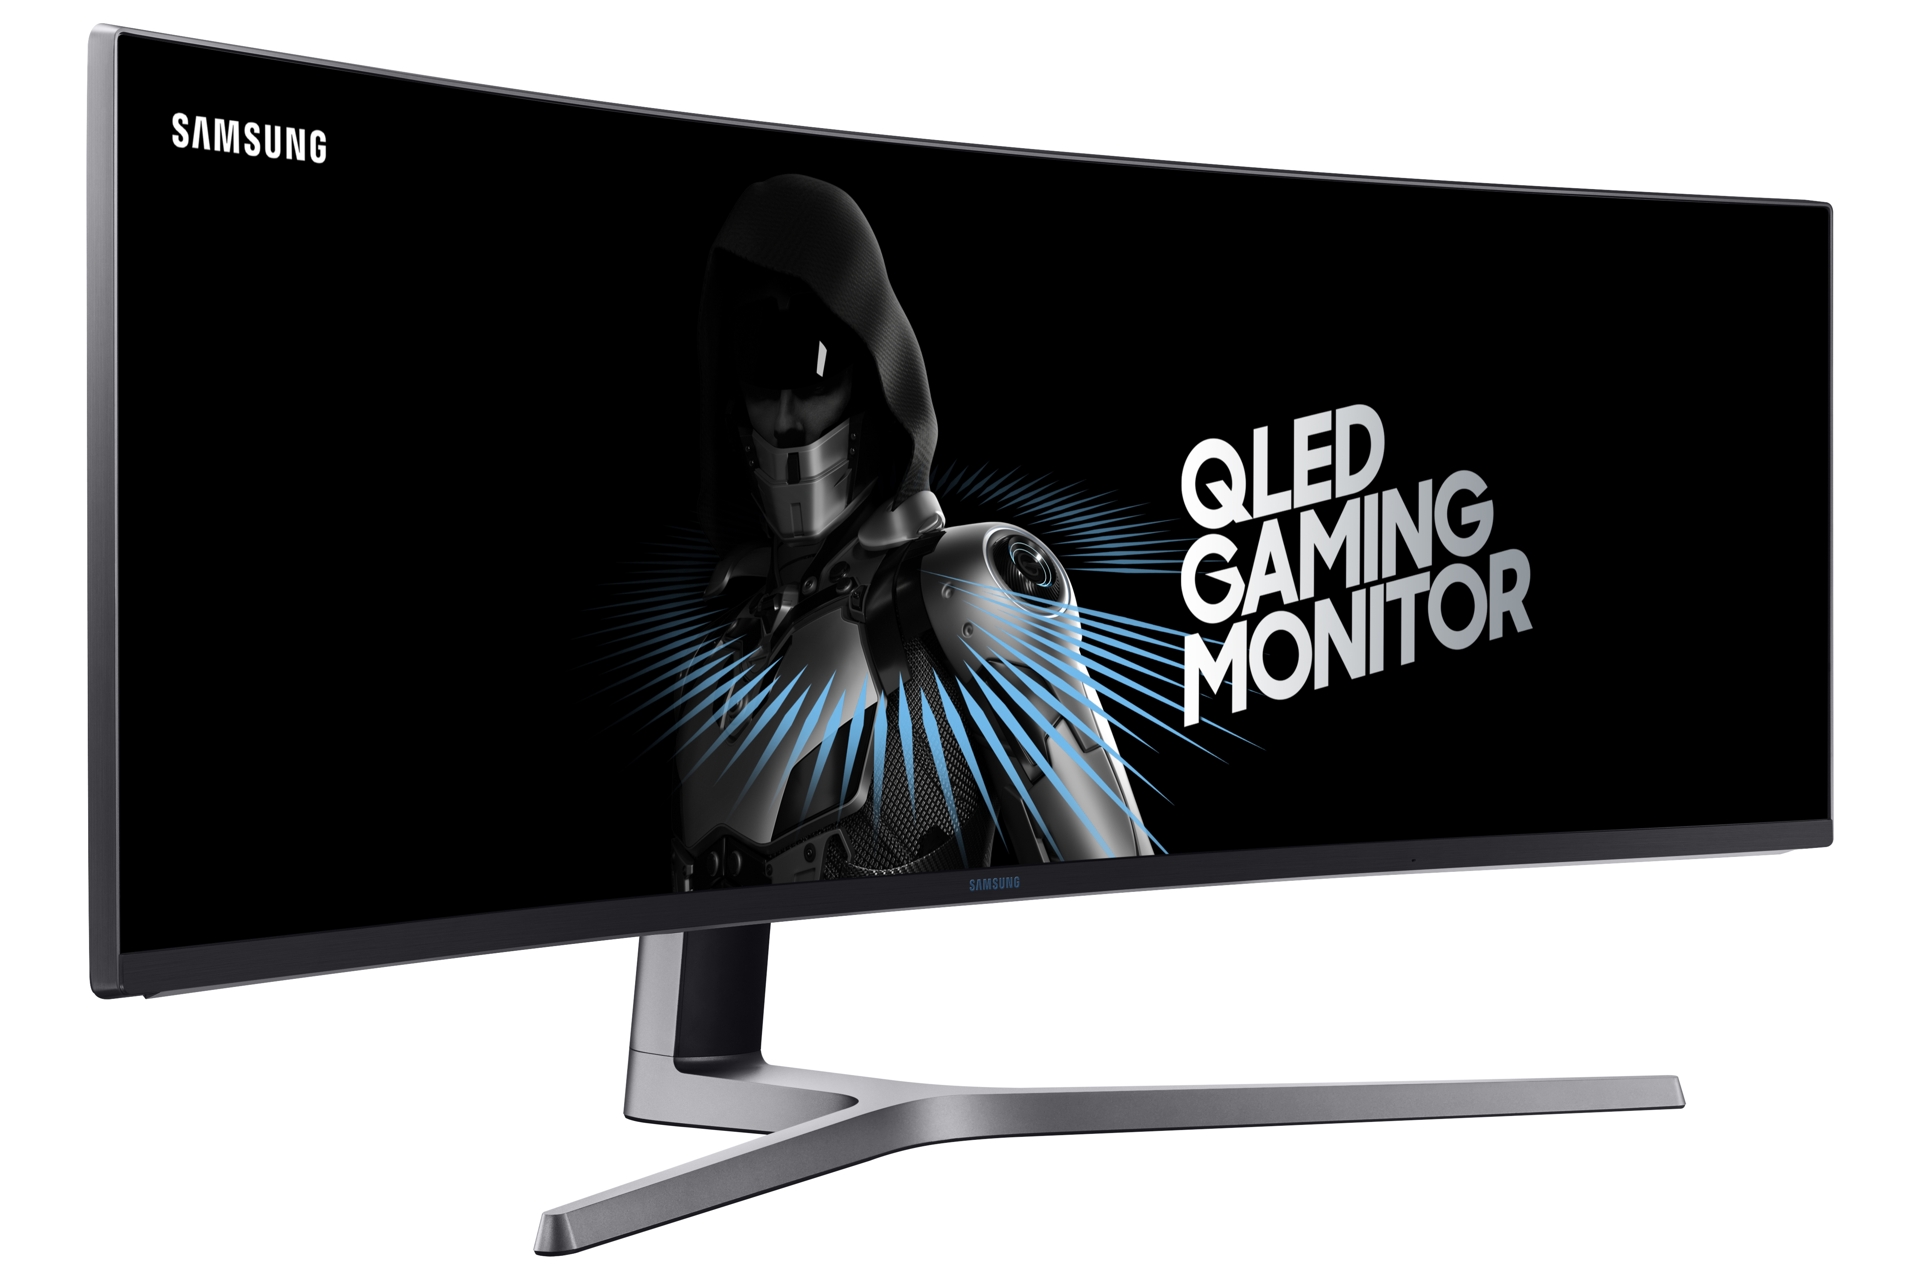 Immagine pubblicata in relazione al seguente contenuto: Samsung annuncia C49HG90, un gaming monitor QLED a schermo curvo da 47-inch | Nome immagine: news26499_Monitor-Samsung-C49HG90_1.jpg